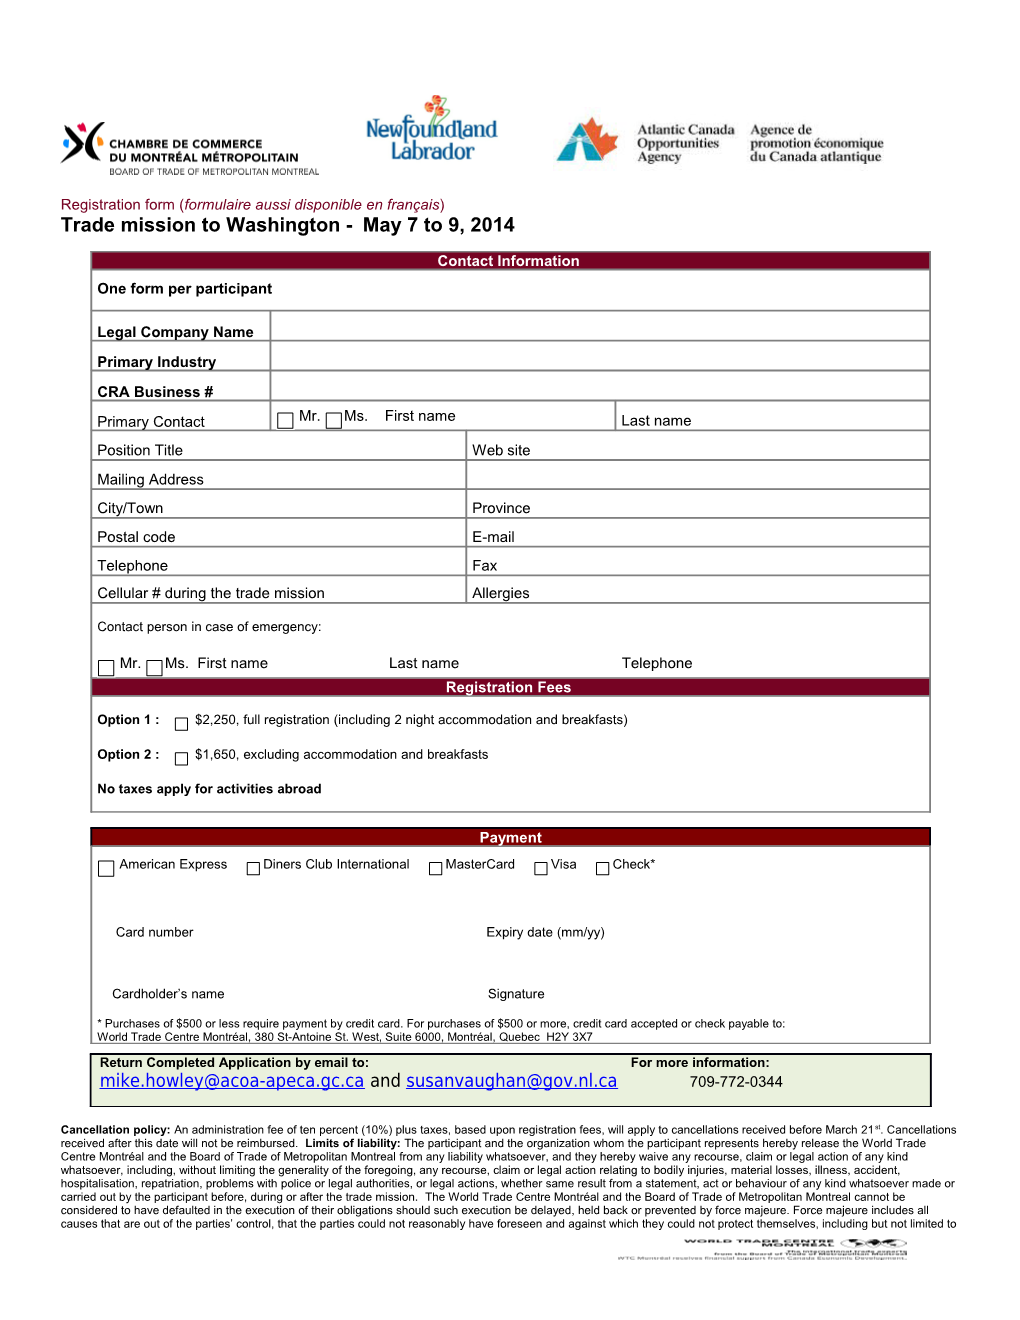 Registration Form ( Formulaire Aussi Disponible En Français )